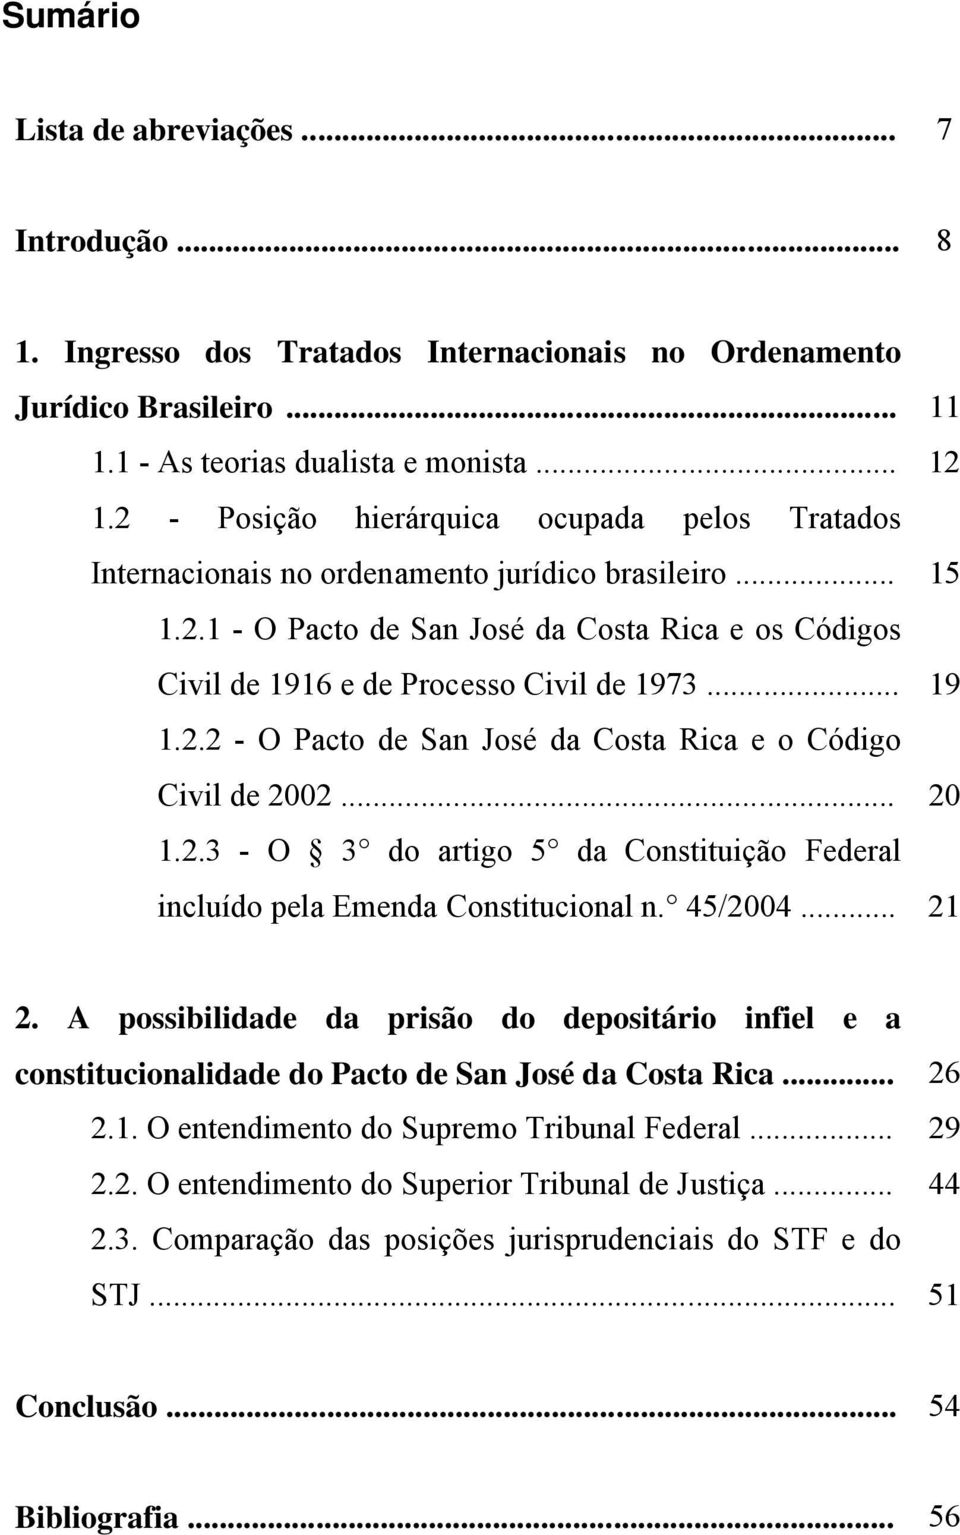 .. 19 1.2.2 - O Pacto de San José da Costa Rica e o Código Civil de 2002... 20 1.2.3 - O 3 do artigo 5 da Constituição Federal incluído pela Emenda Constitucional n. 45/2004... 21 2.